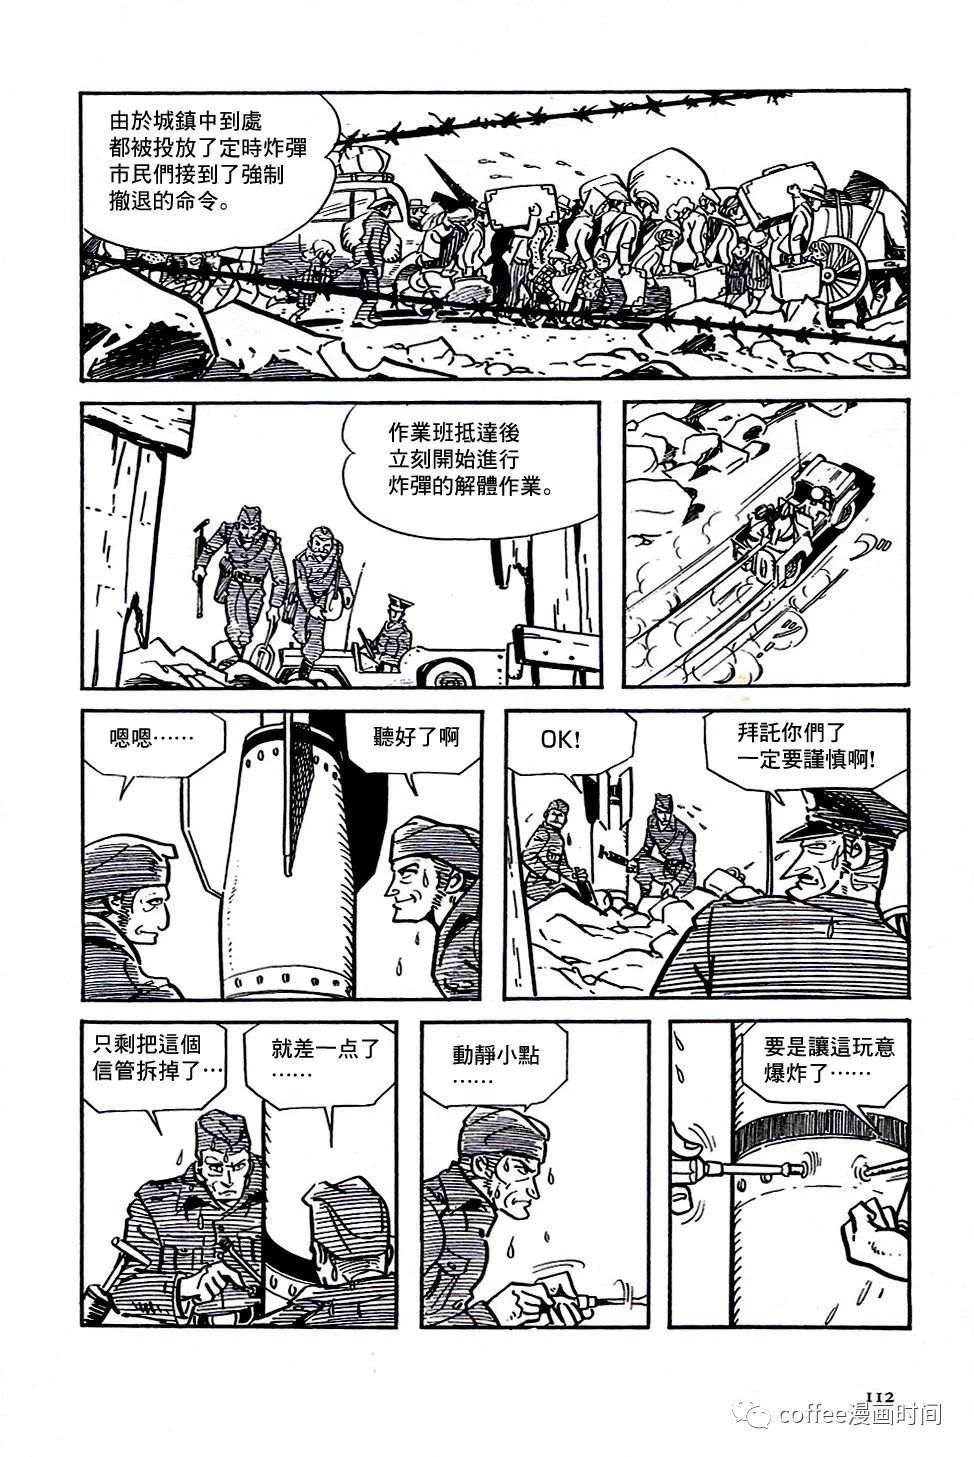 日本短篇漫畫傑作集 - 白土三平《戰爭》 - 2